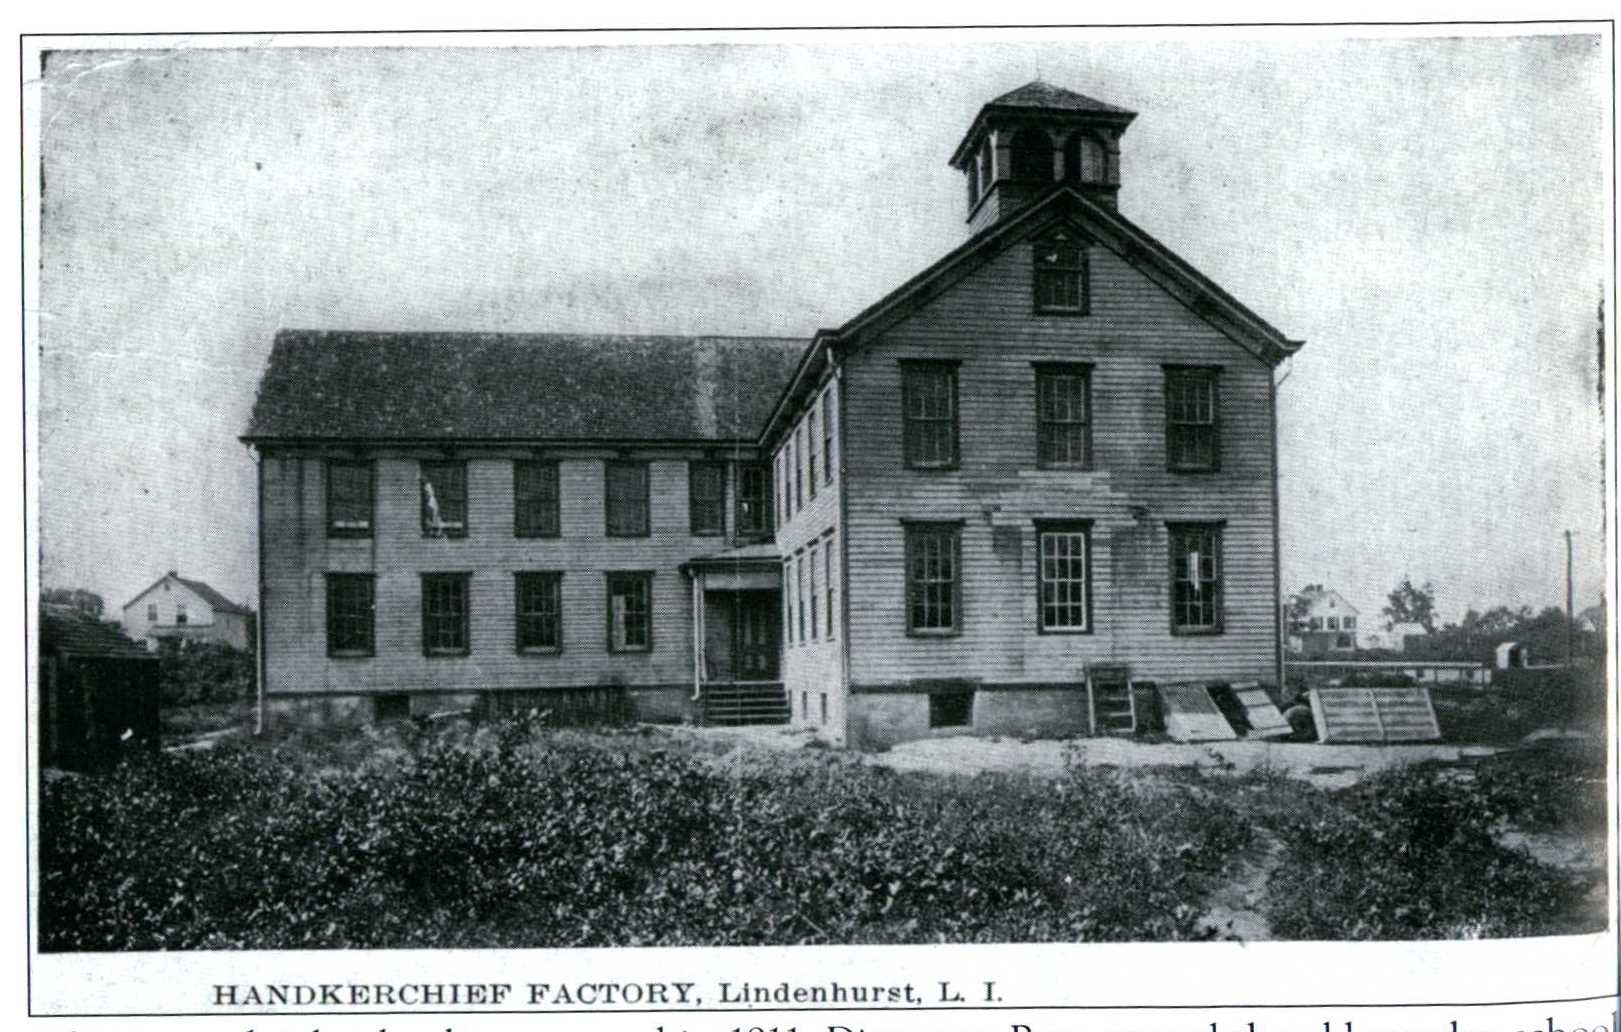 Handkerchief Factory (2nd School Building)